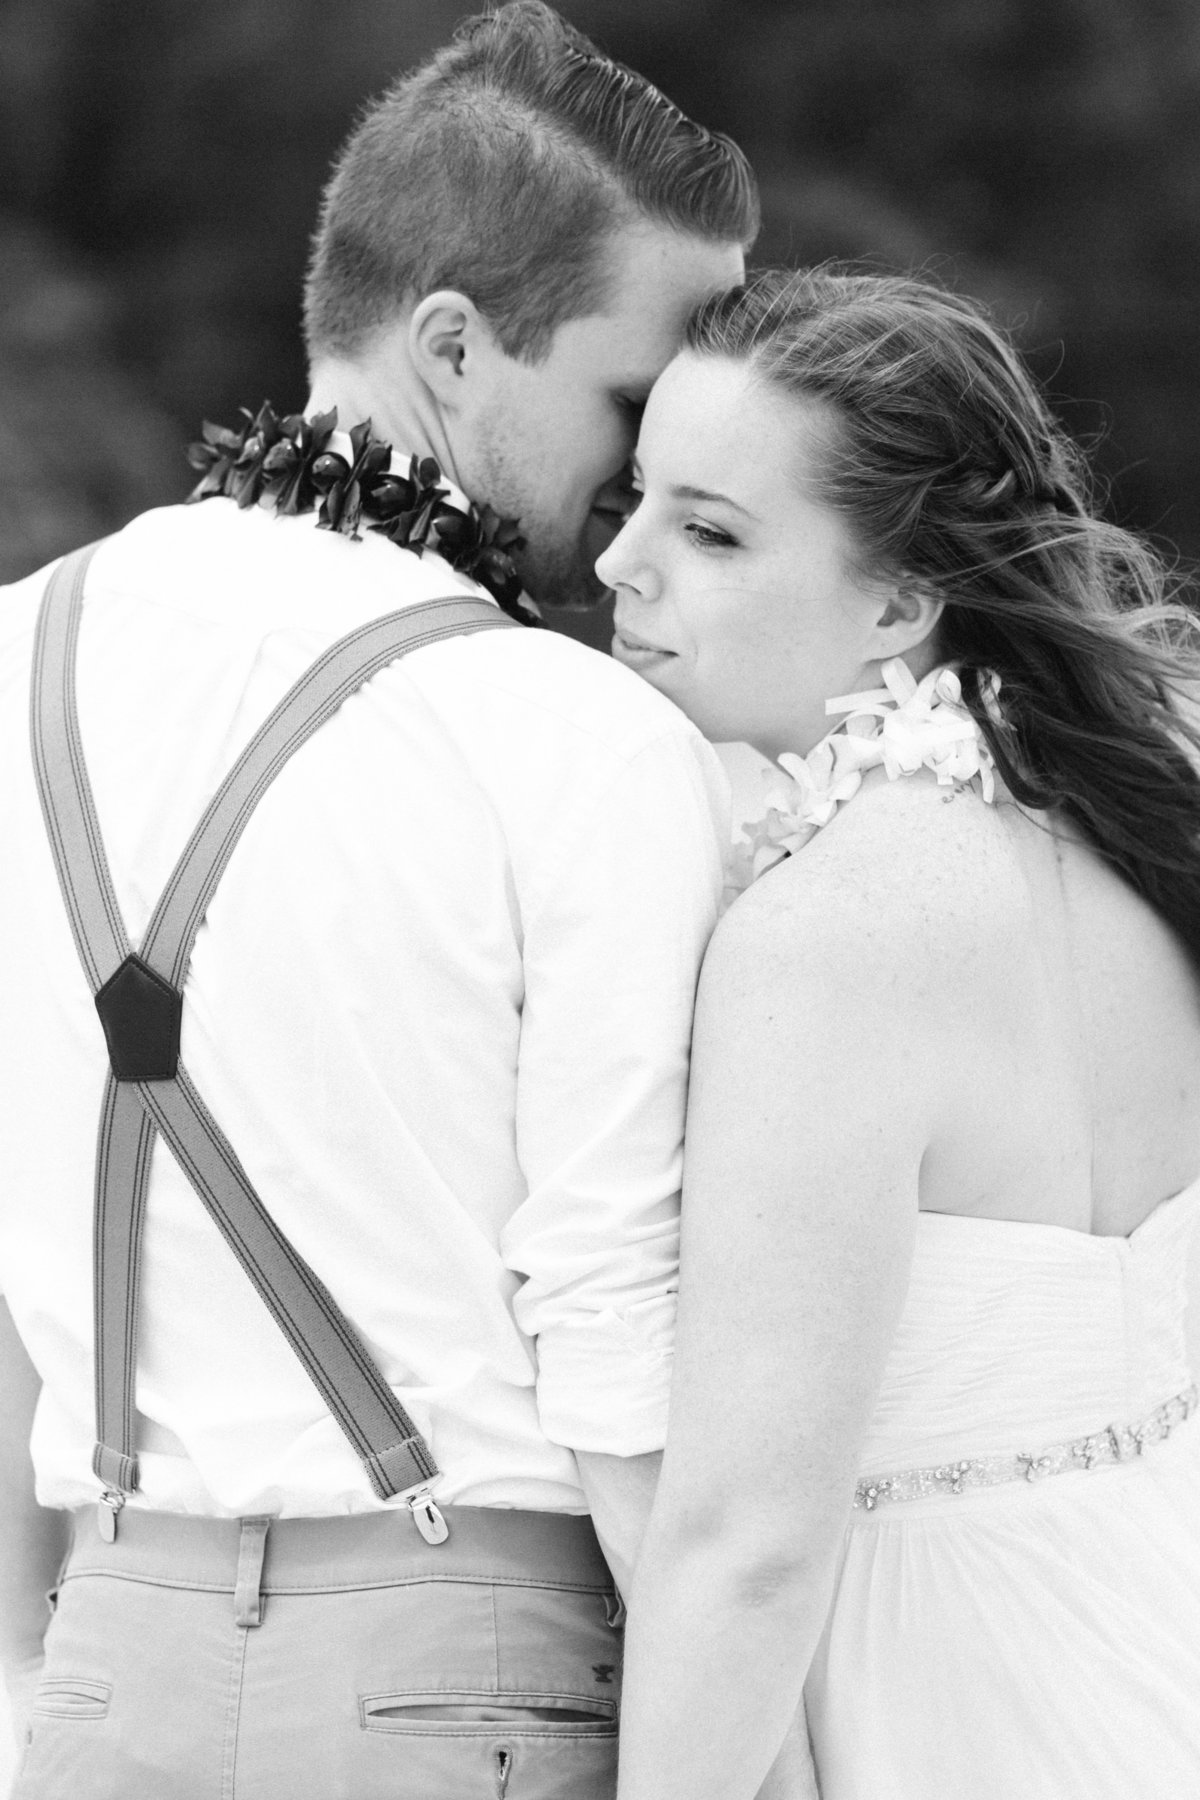 Joel and Kelly-Hawaii Wedding Photographer Samantha Laffoon-3677